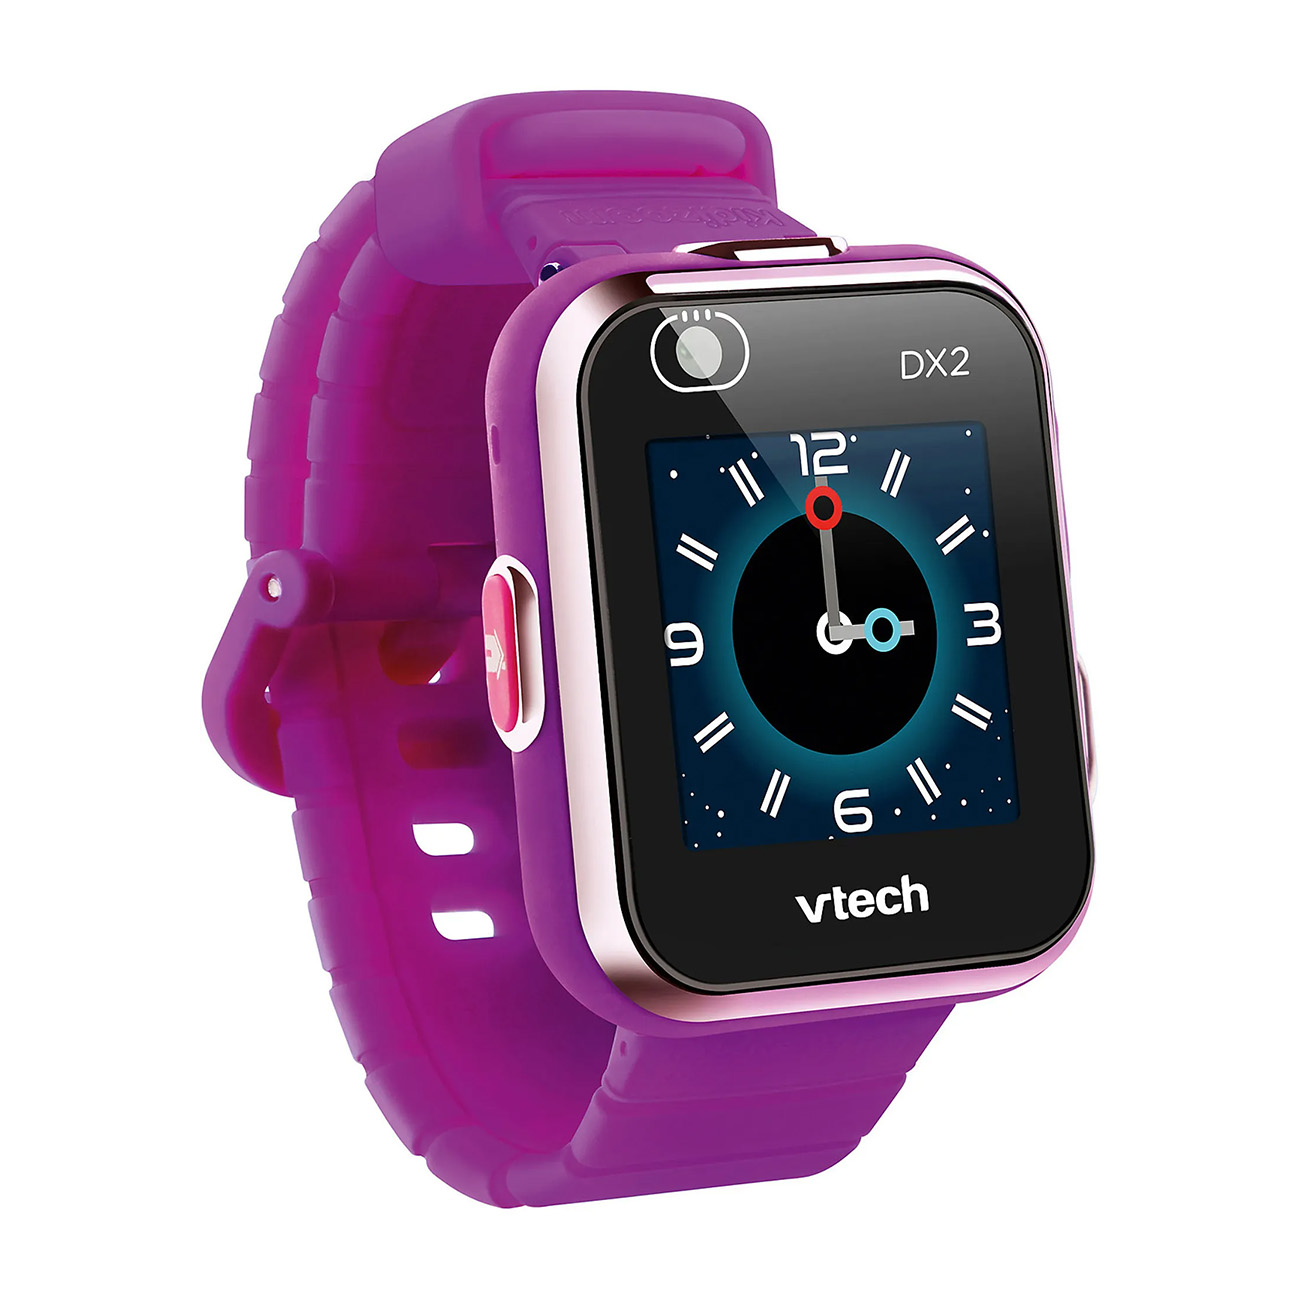 Silikon, lila Smartwatch DX2 Kidizoom VTECH